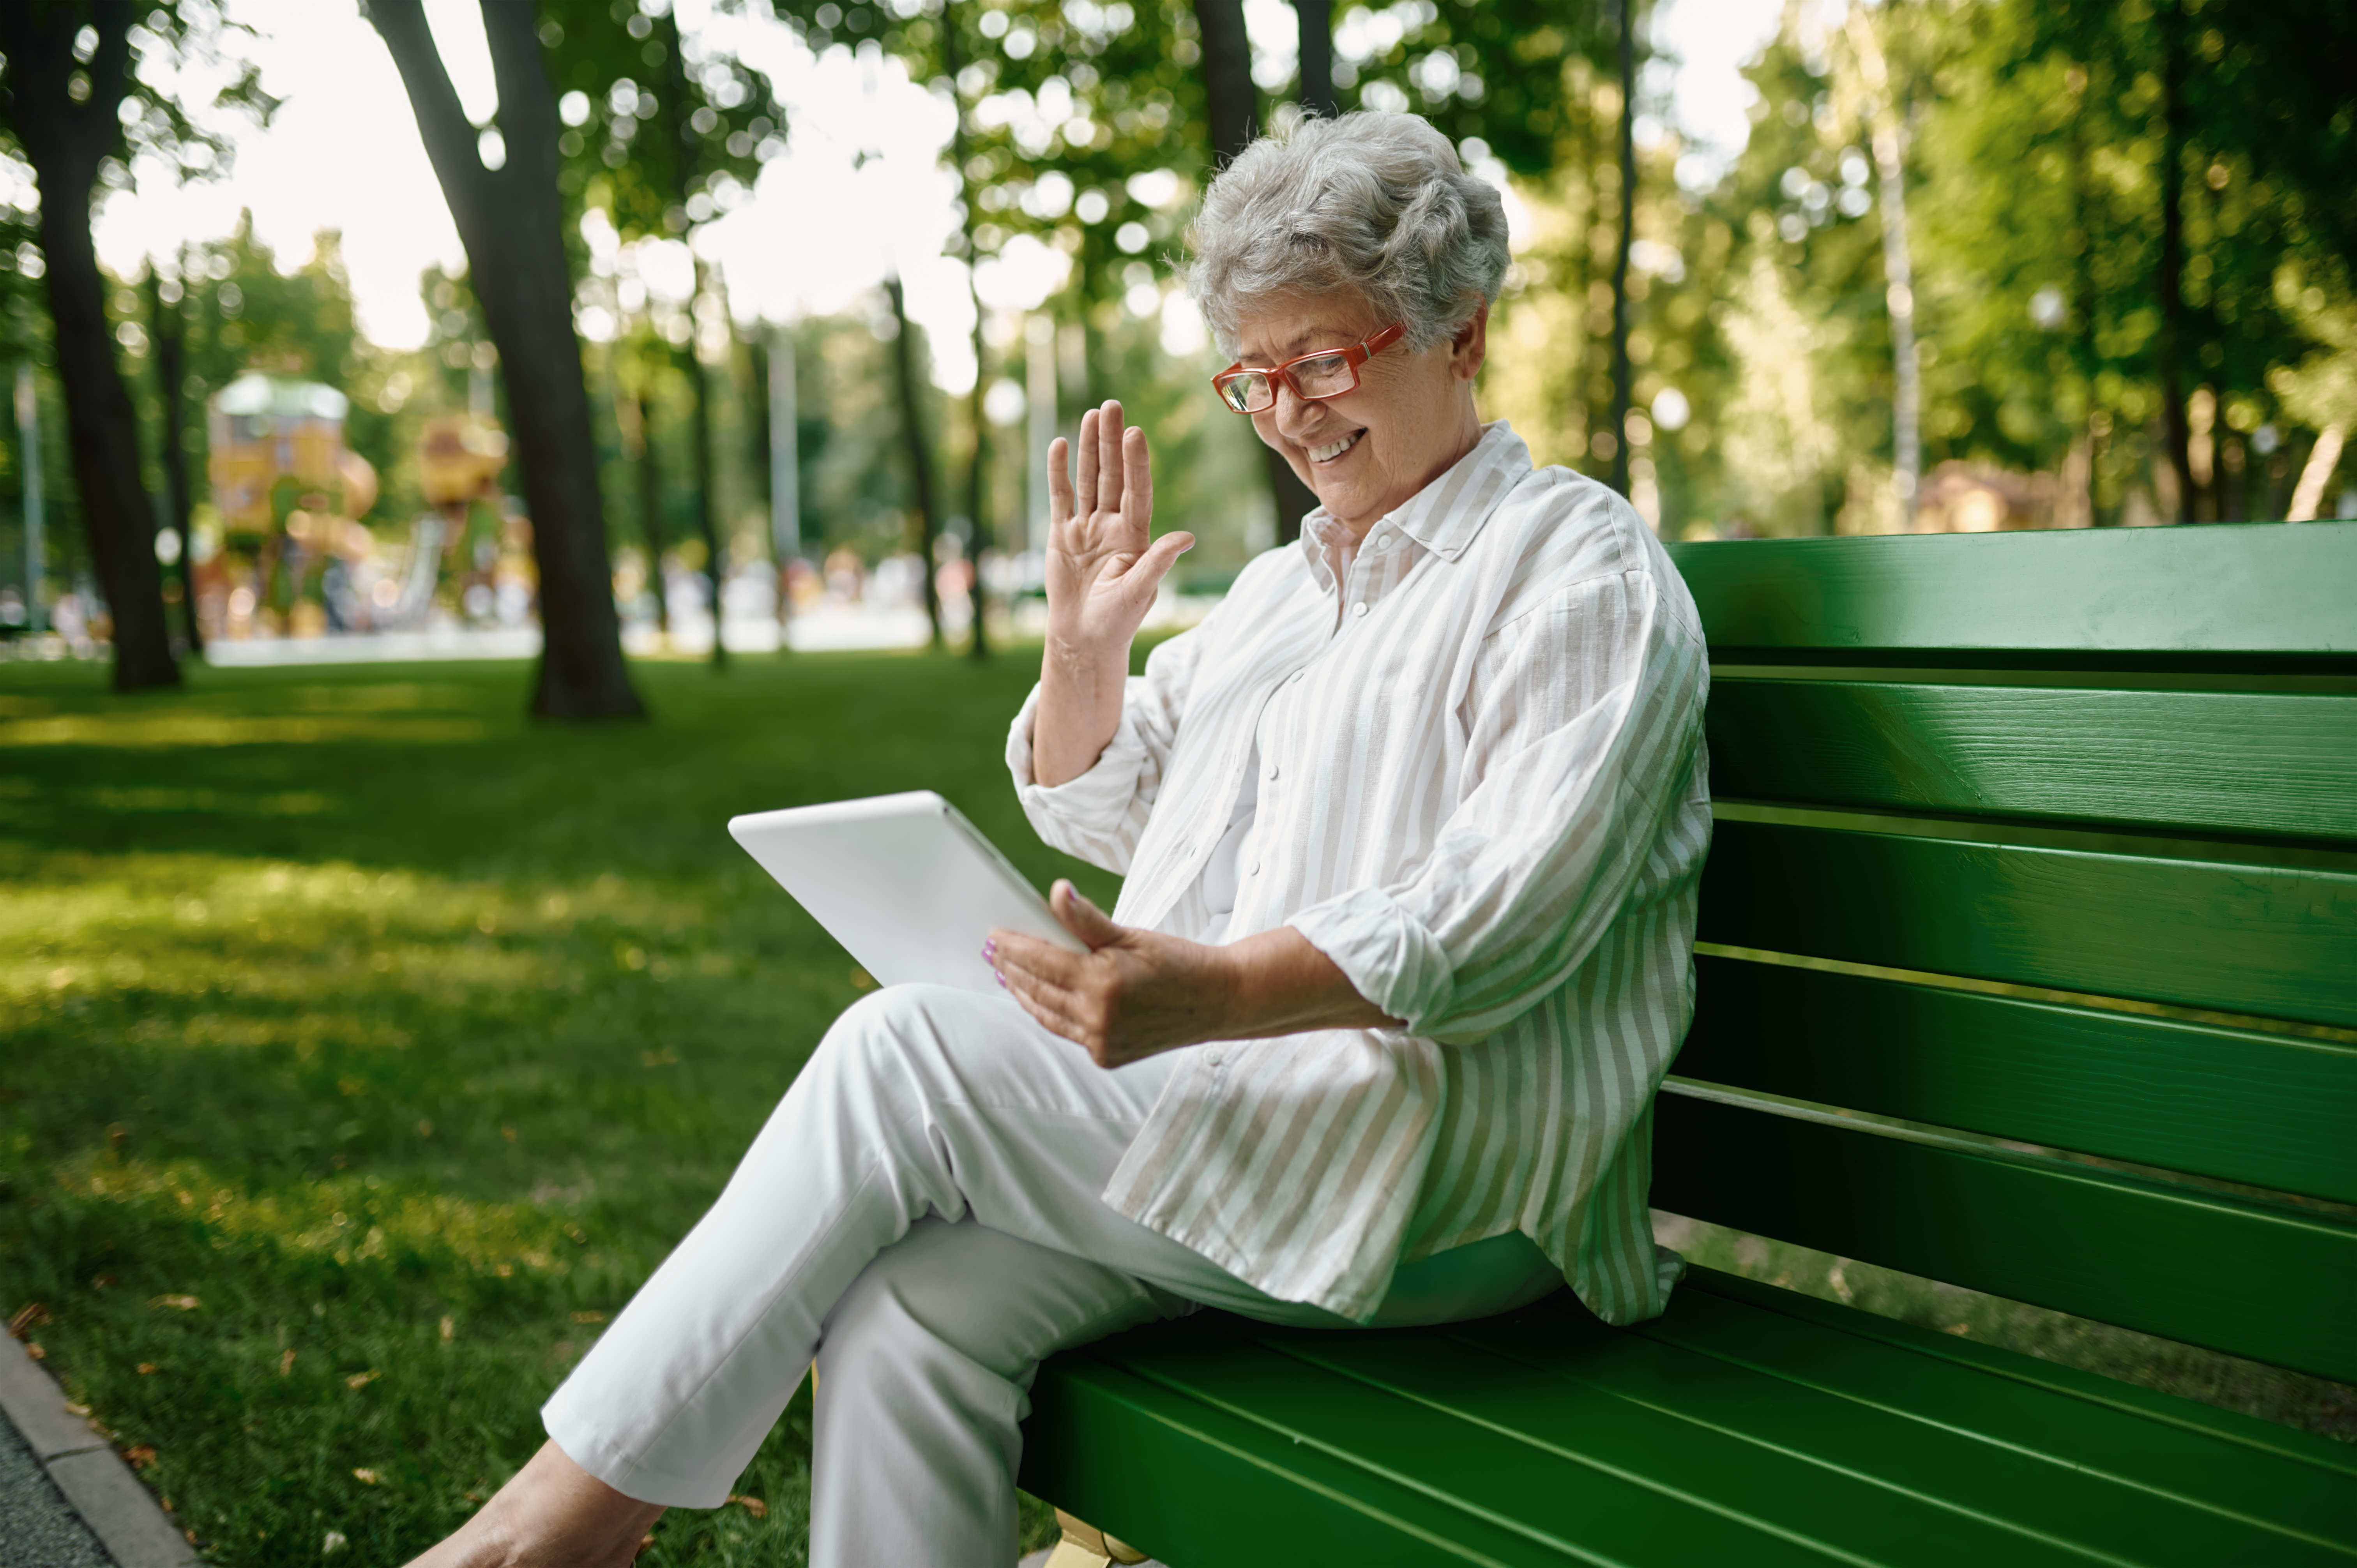 Mujer sentada en el banco de un parque sujetando una tablet